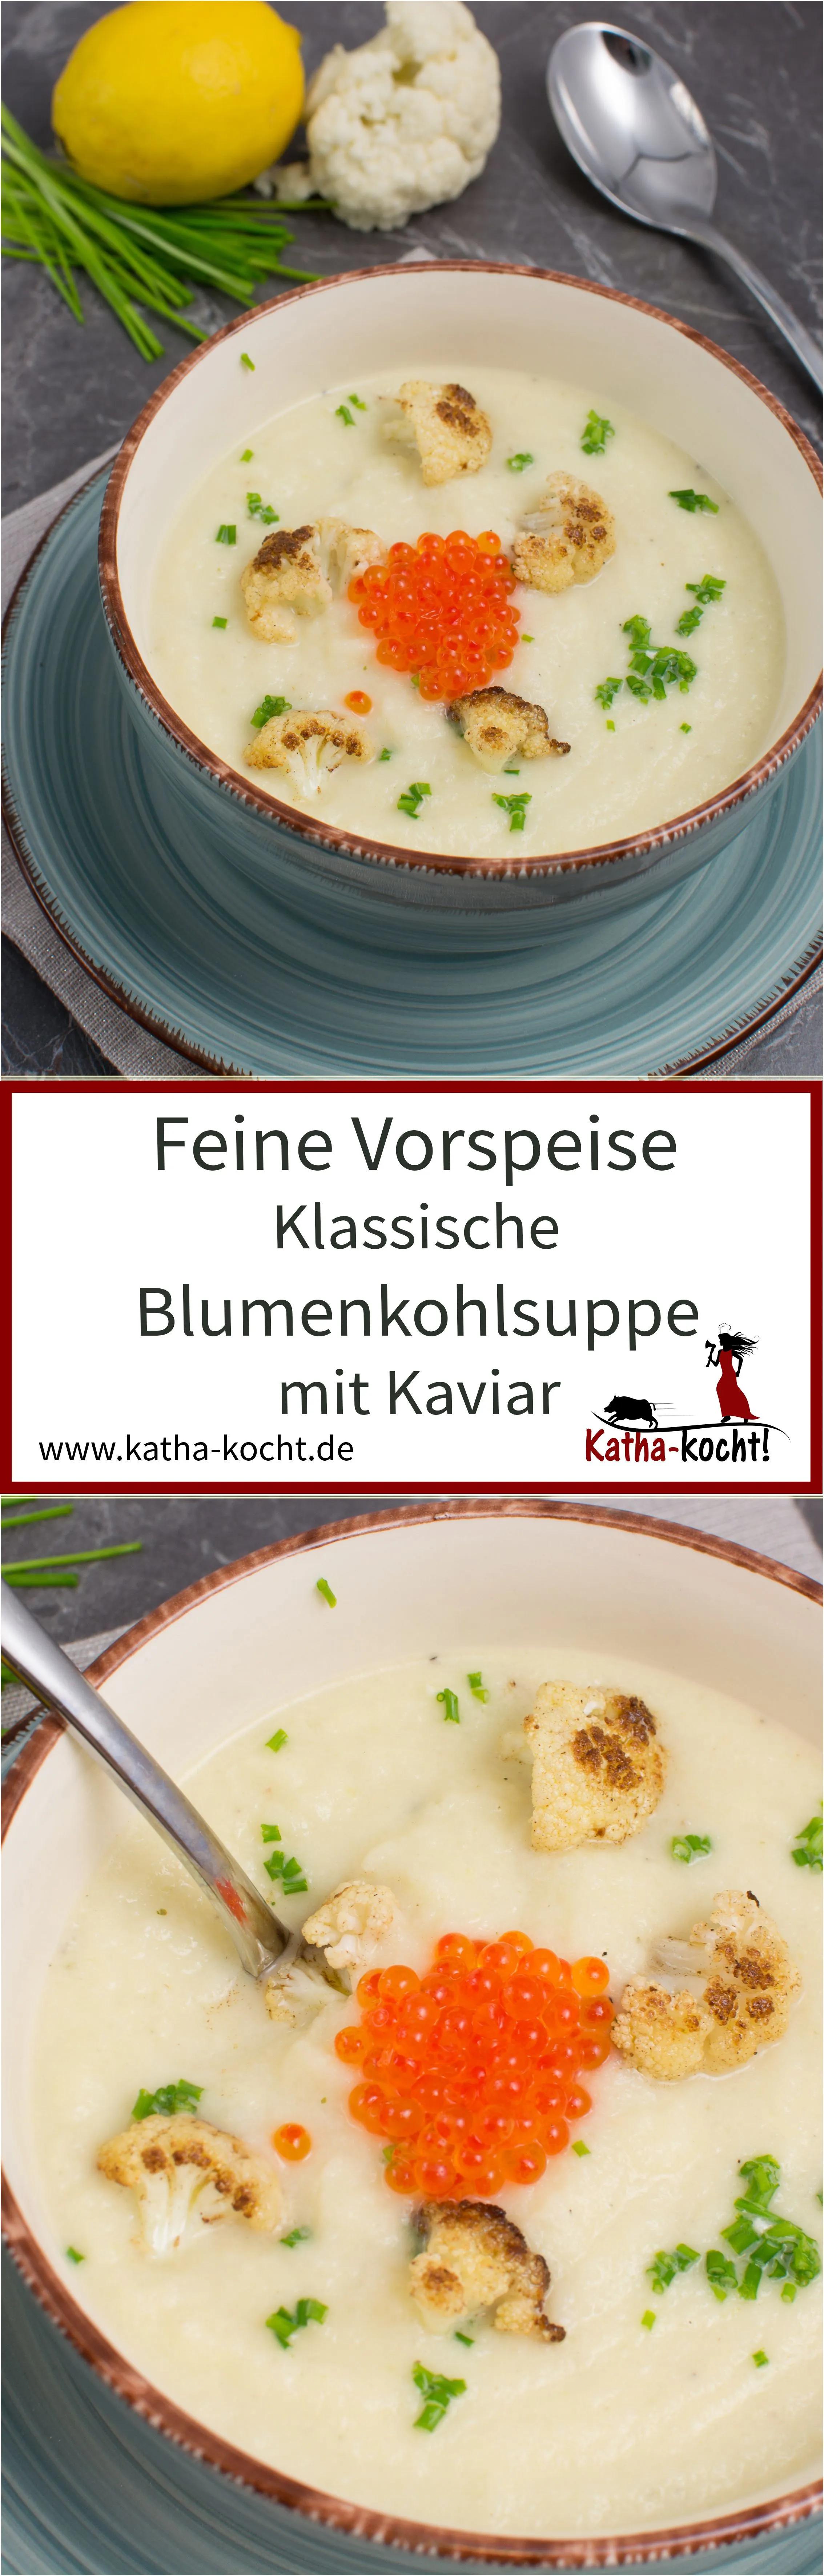 Klassische Blumenkohlsuppe mit Kaviar - Katha-kocht! | Blumenkohlsuppe ...